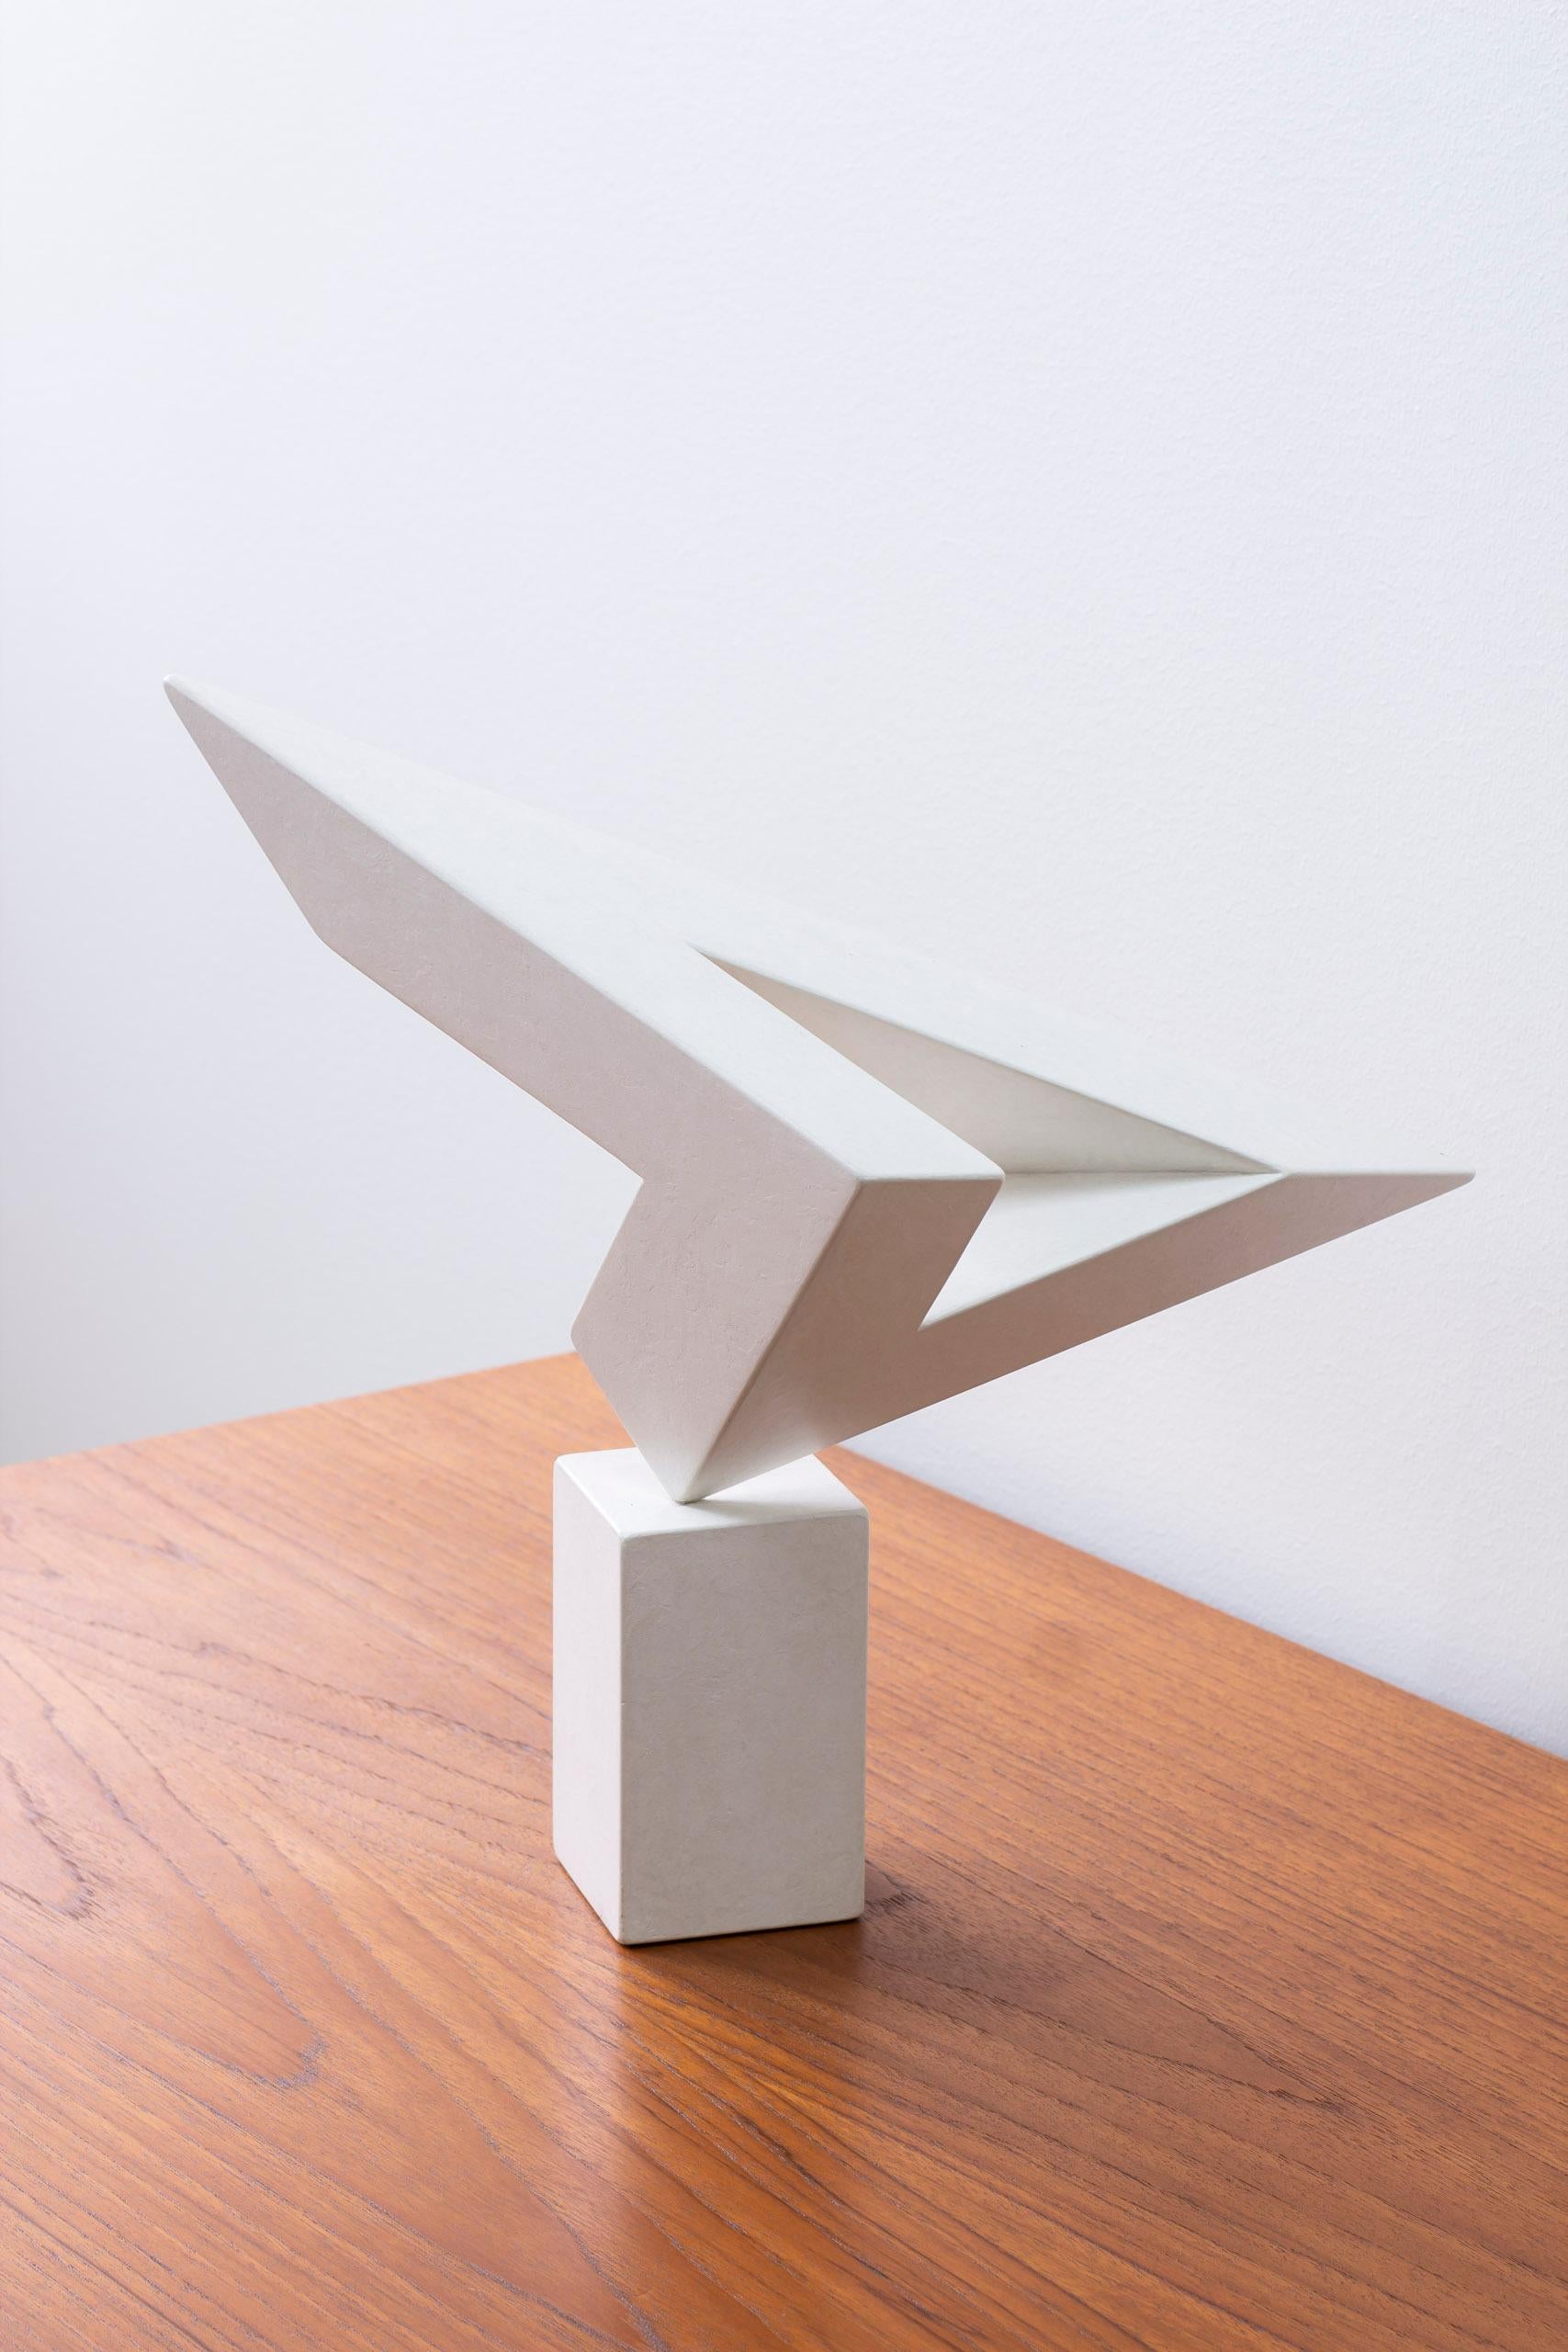 Sculpture de l'artiste américain David Eisenhauer. Techniques mixtes, Suède 1985